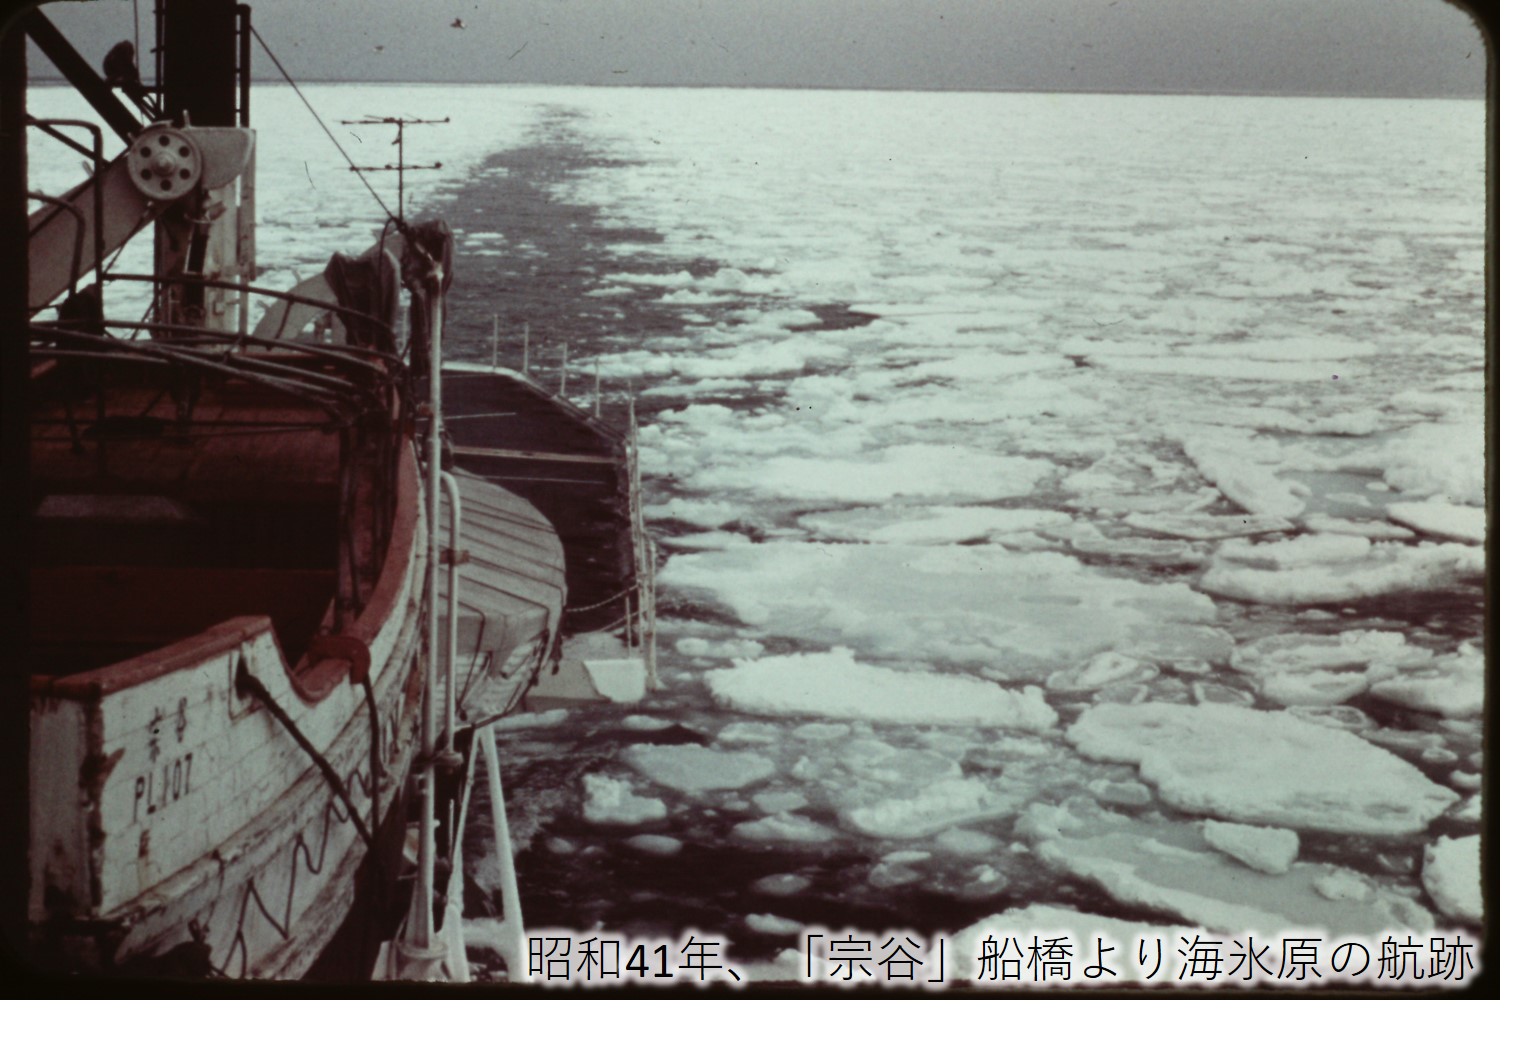 昭和41年、「宗谷」船橋より海氷原の航跡